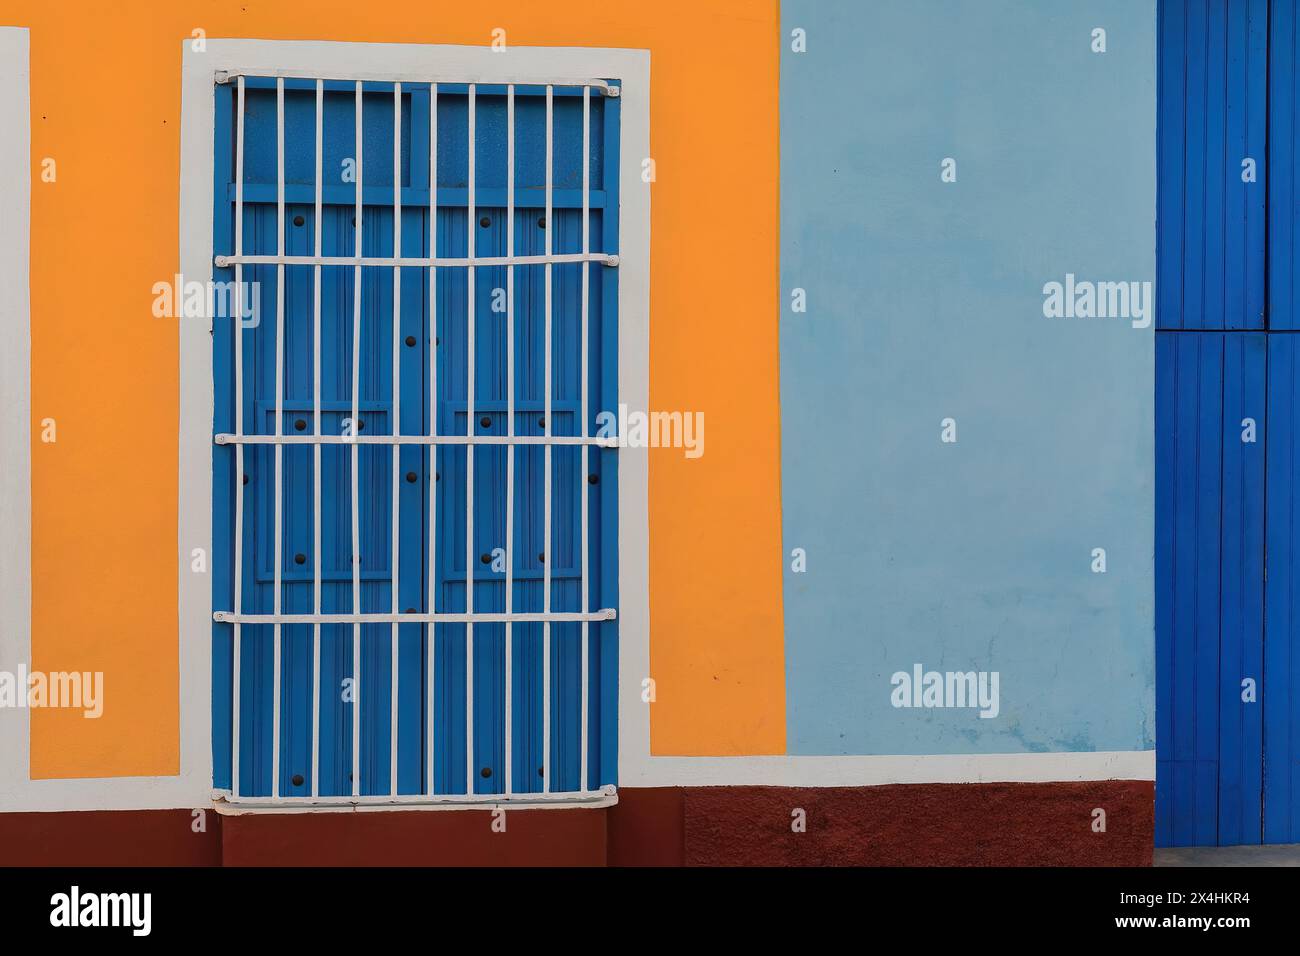 230 pareti colorate di casa coloniale che mostrano la solita finestra a griglia con persiane in legno e porte lunghe su una facciata blu-arancio-marrone-bianco. Trinidad-Cuba. Foto Stock